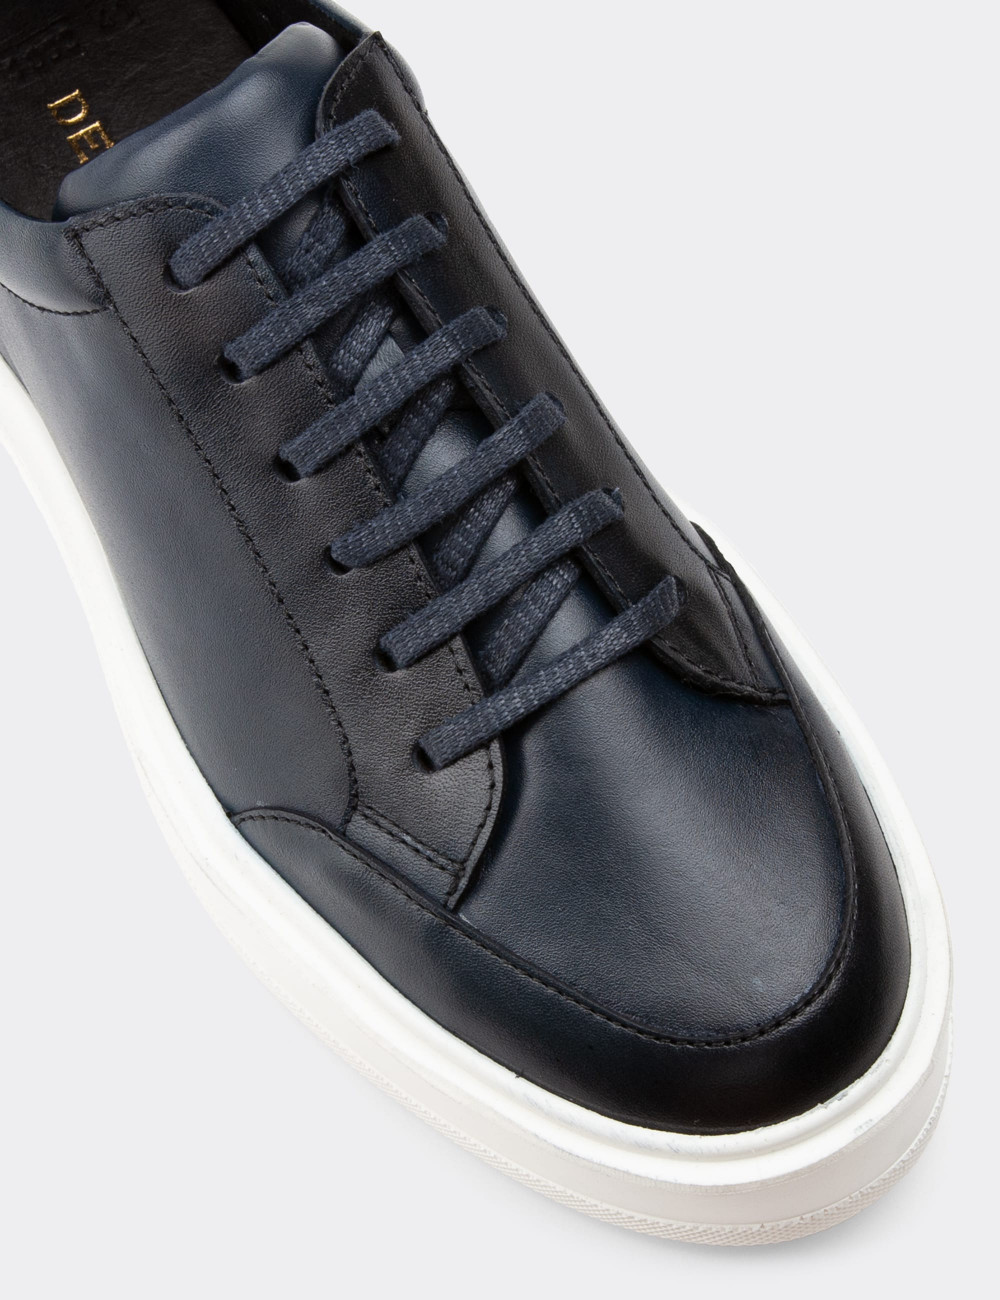 Hakiki Deri Lacivert Sneaker Erkek Ayakkabı - 01882MLCVP01